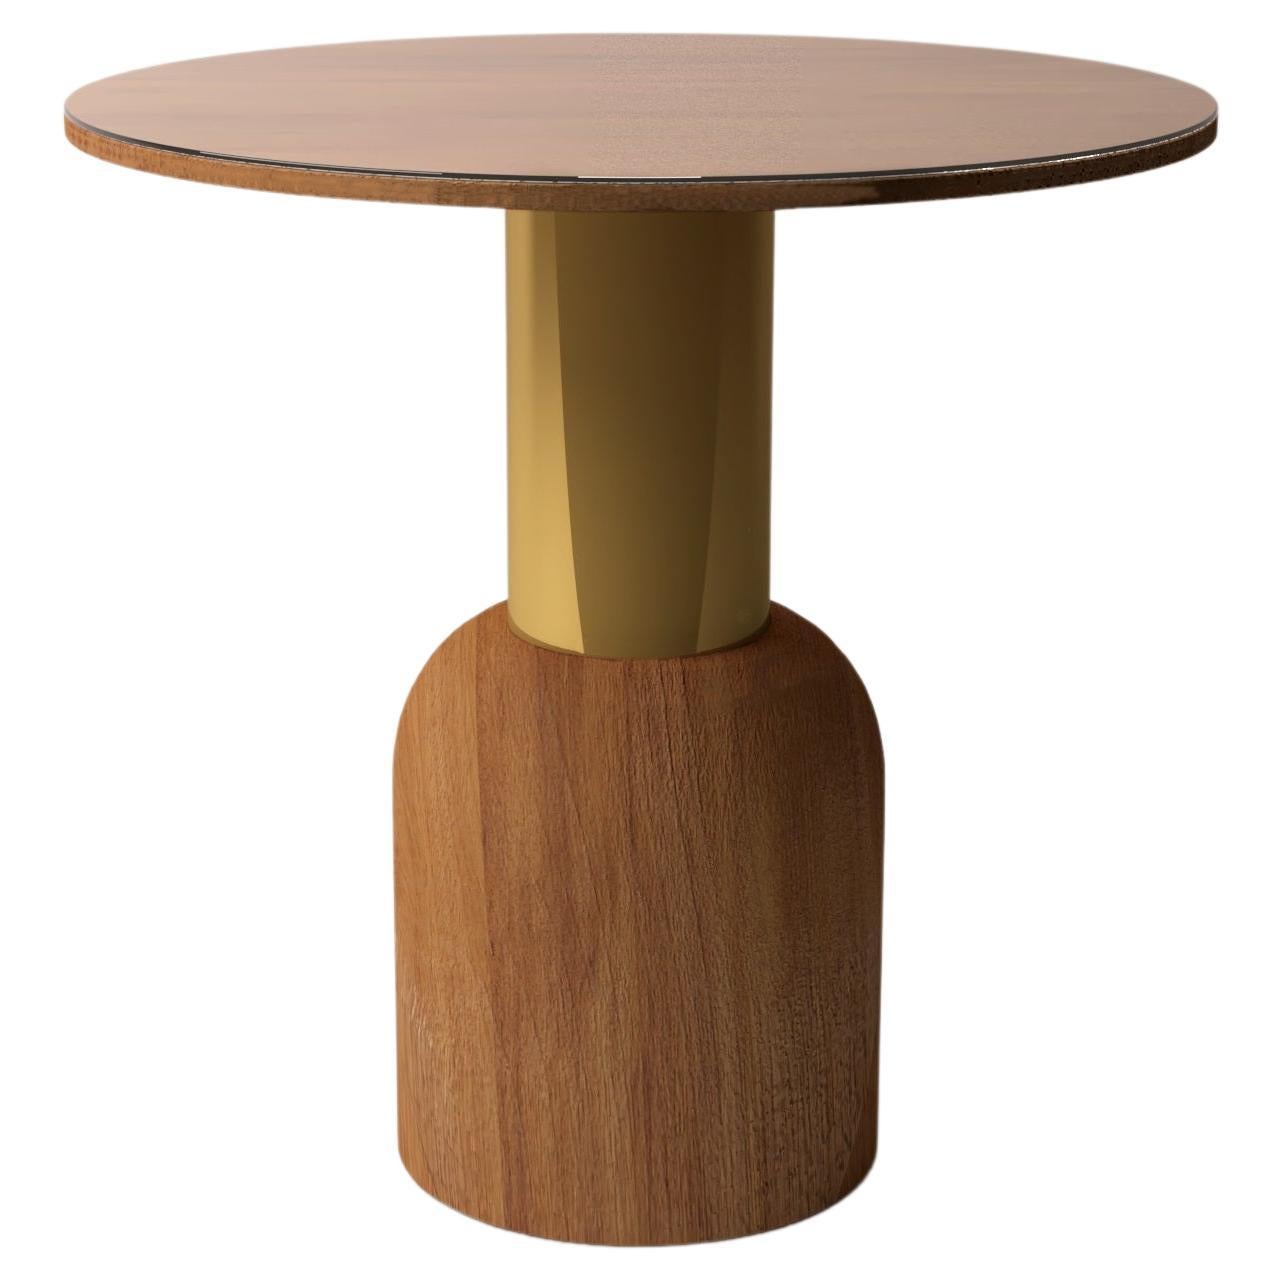 Serenity Fusion 50 Iroko Wood Table by Alabastro Italiano